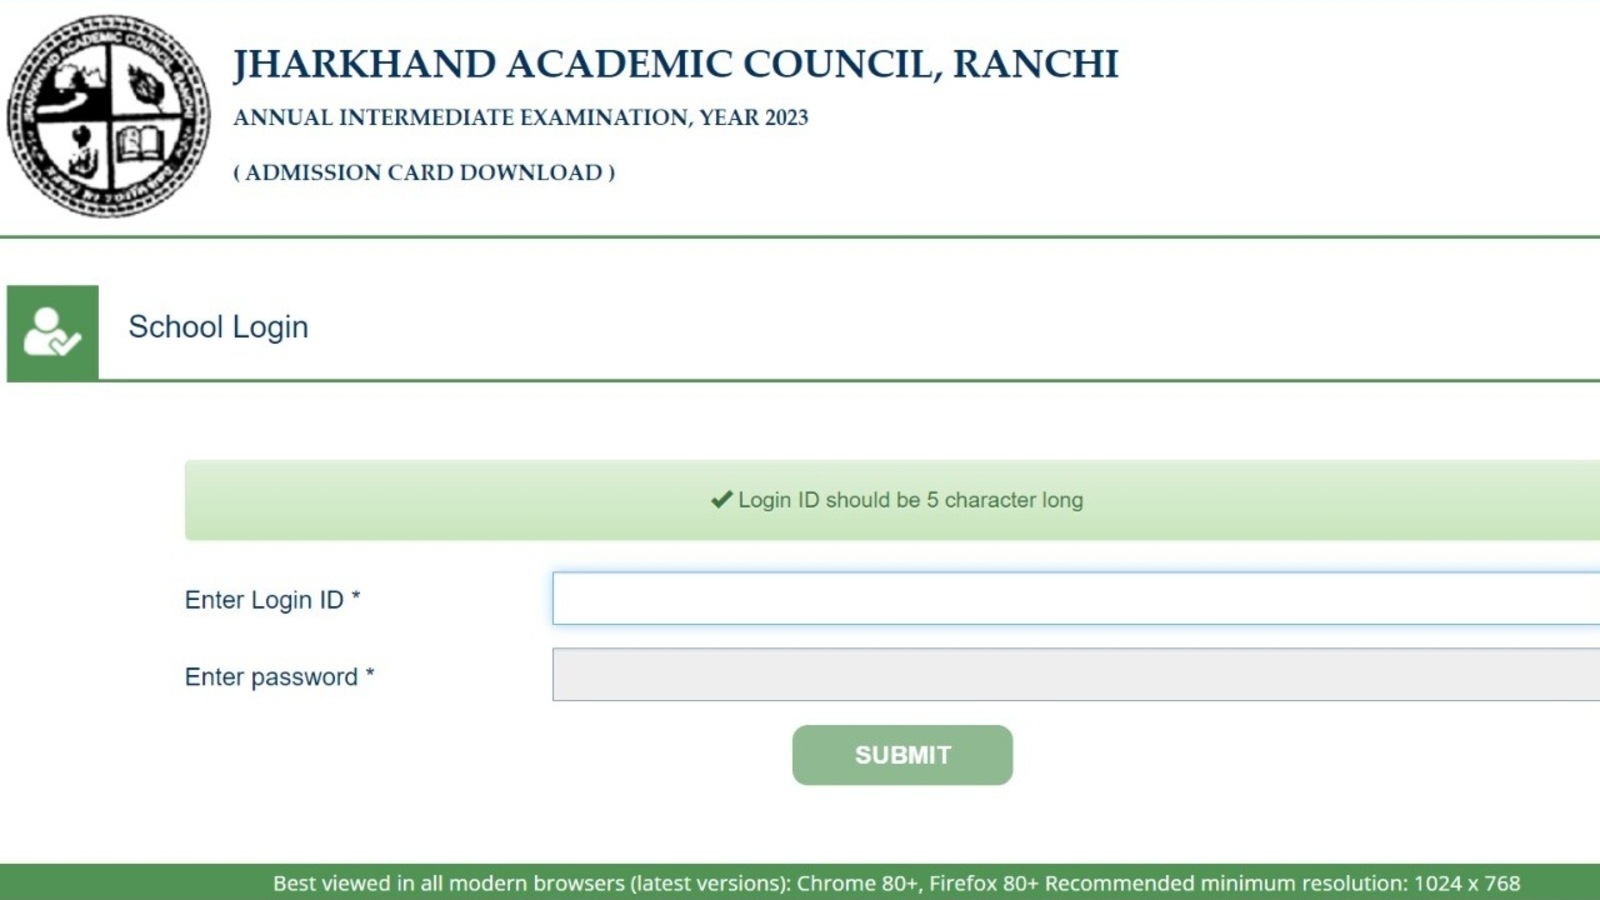 JAC झारखंड कक्षा 12 वीं का एडमिट कार्ड 2023 jac.jharkhand.gov.in पर, यहां लिंक करें